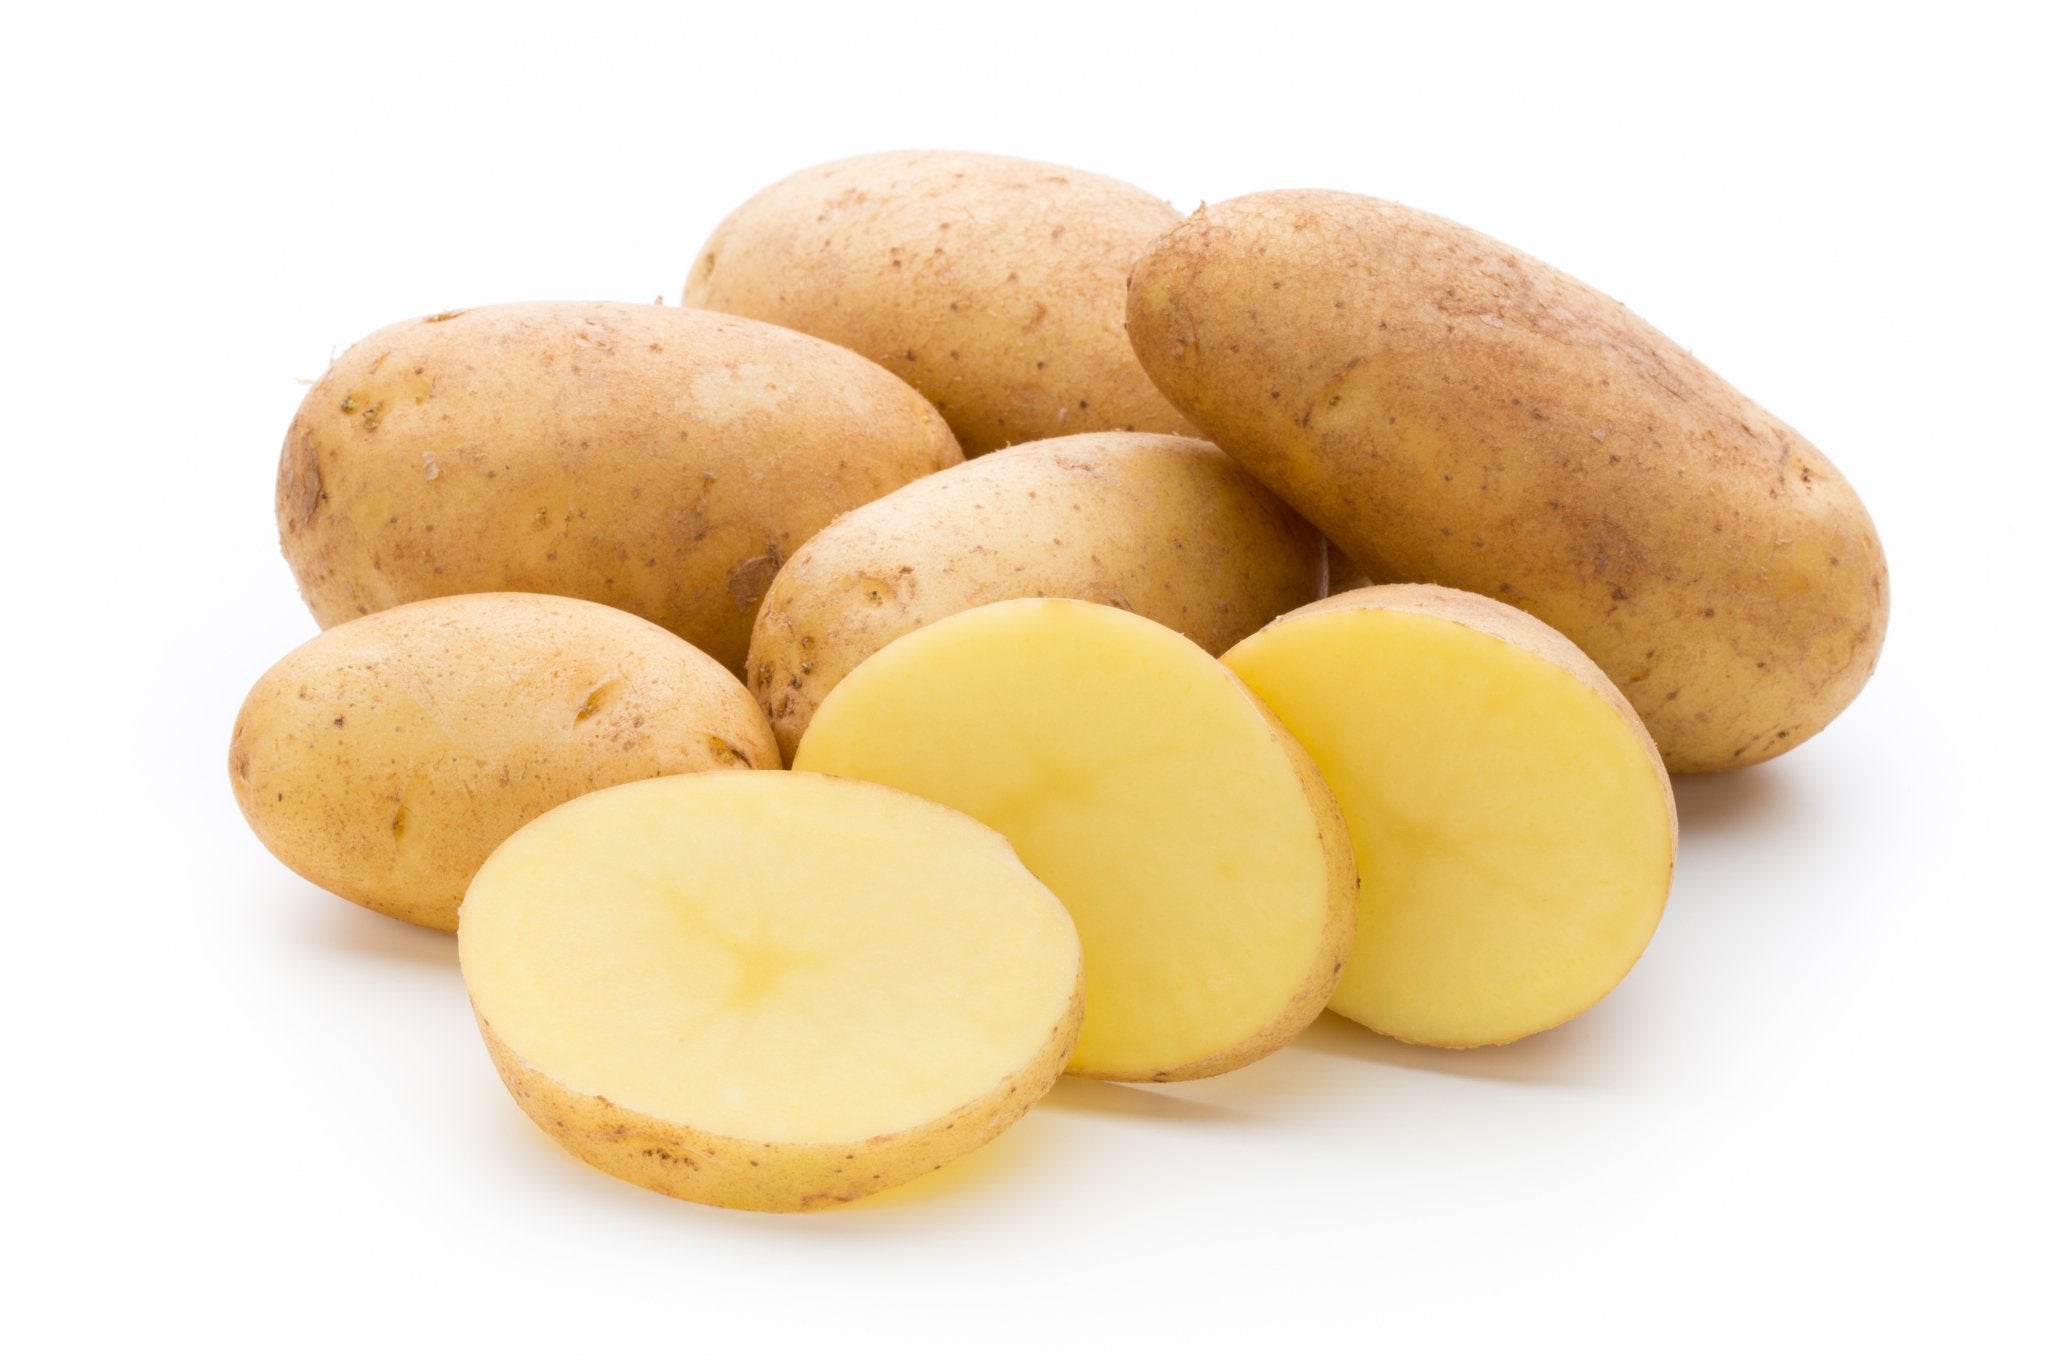 Diese Kartoffeln der Sorte "Annabelle" sehen frisch und lecker aus. Regionale Bio-Kartoffeln.